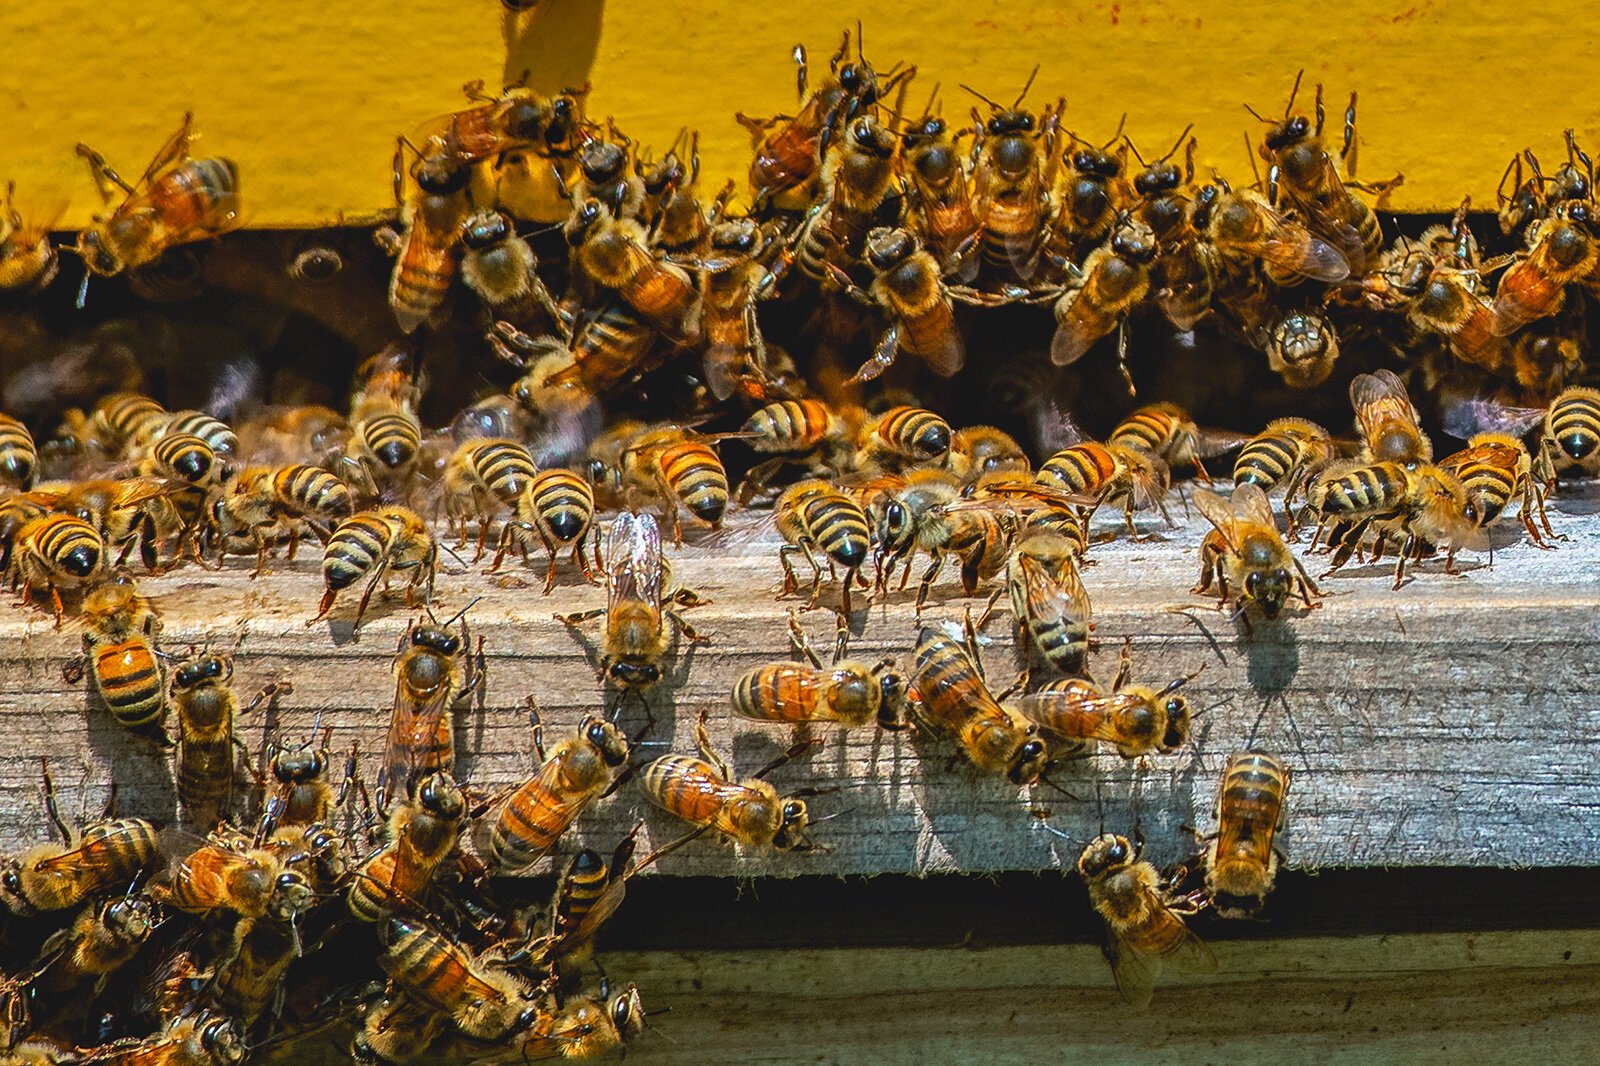 Honey bees flying into a hive at The Farm at St. Joe.